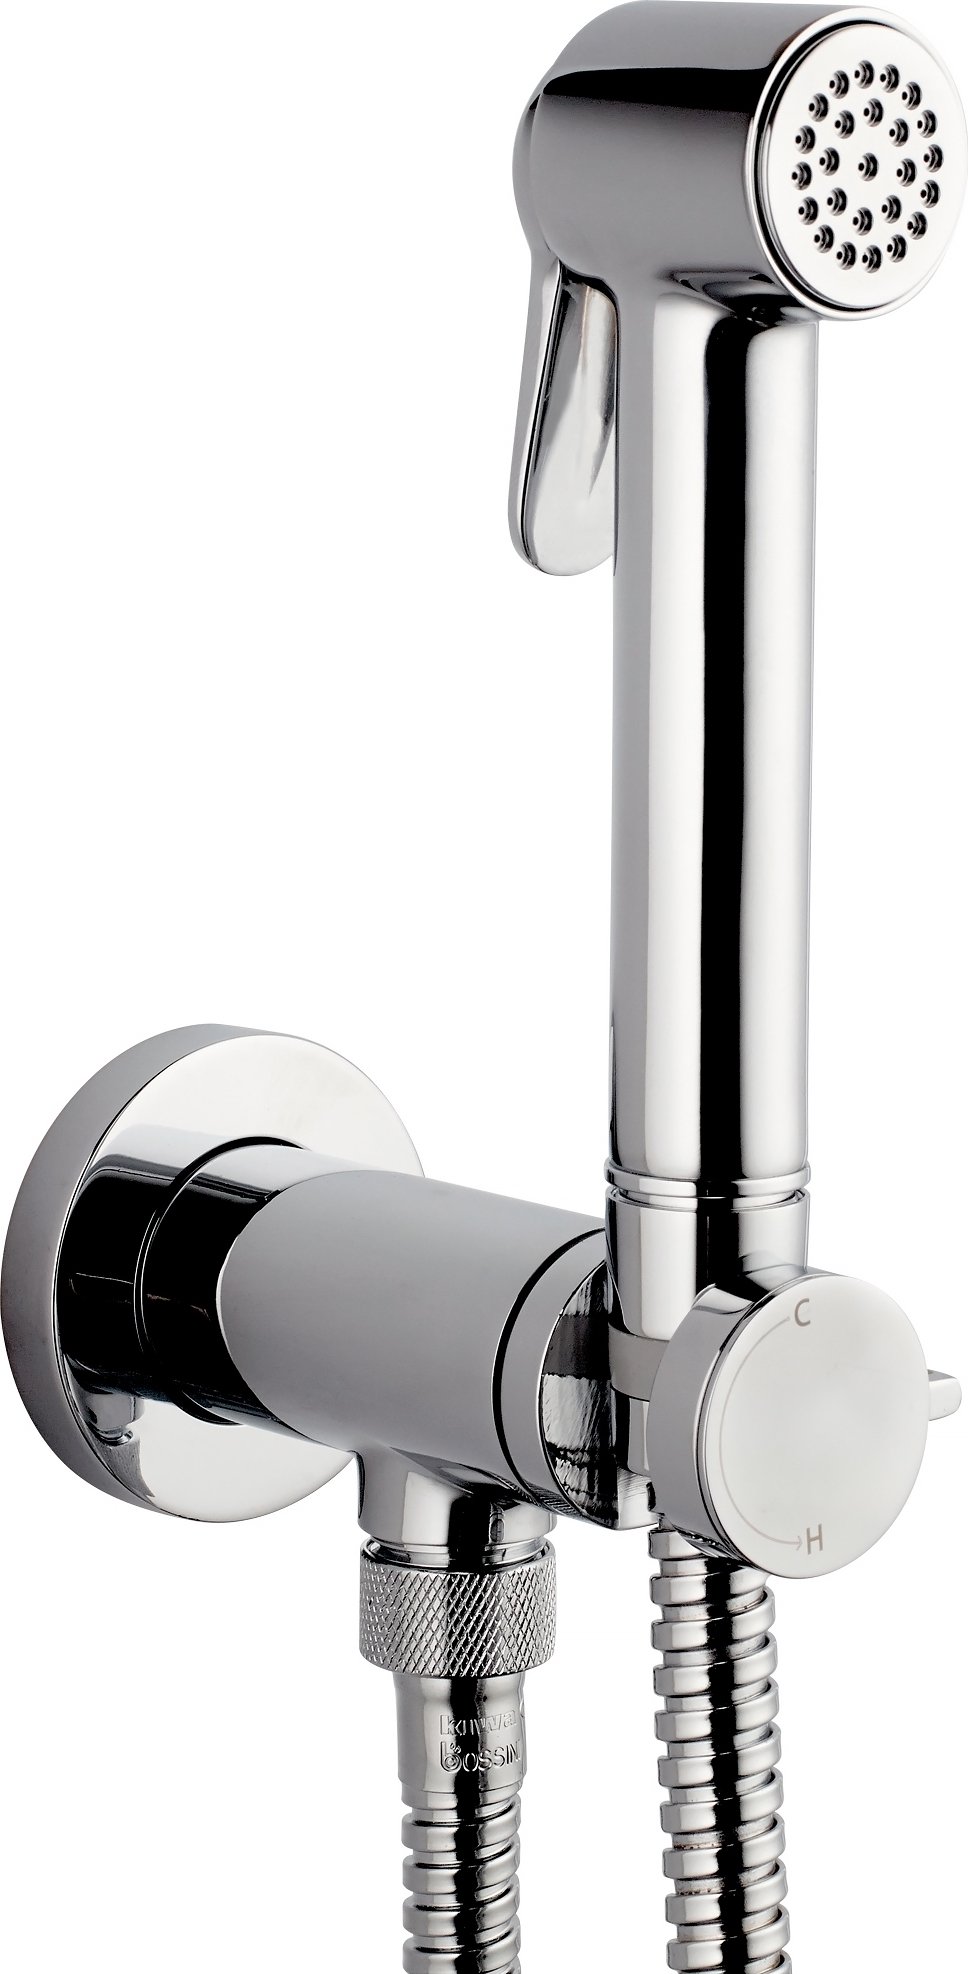 Купить Гигиенический душ Bossini Paloma Brass Mixer Set со смесителем E37005B.030, гигиенический душ, хром, пластик